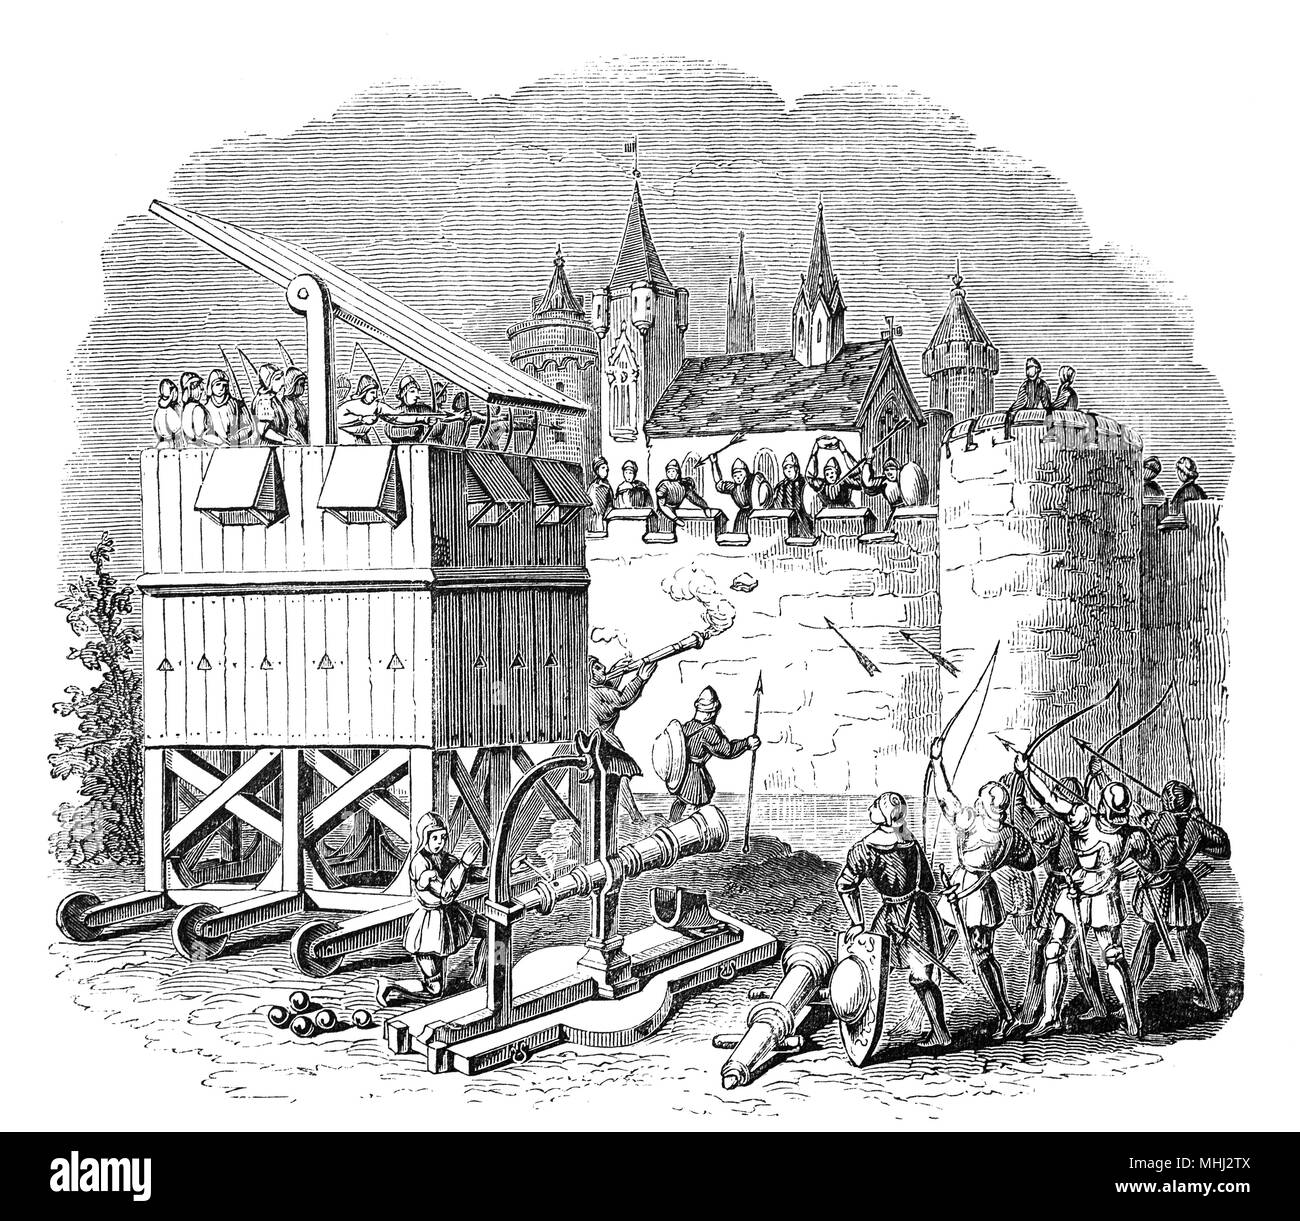 Ein belagerungsturm im 15. Jahrhundert von dem Langbögen und Armbrüste in belagerungskrieges verwendet werden könnten. Sie wurden an der Seite von Kanonen eingesetzt, die die verschiedenen Arten von katapulten ersetzt, aber immer noch eine Vielzahl von belagerungsmaschinen wie Skalierung Leitern und Rammböcke. Stockfoto